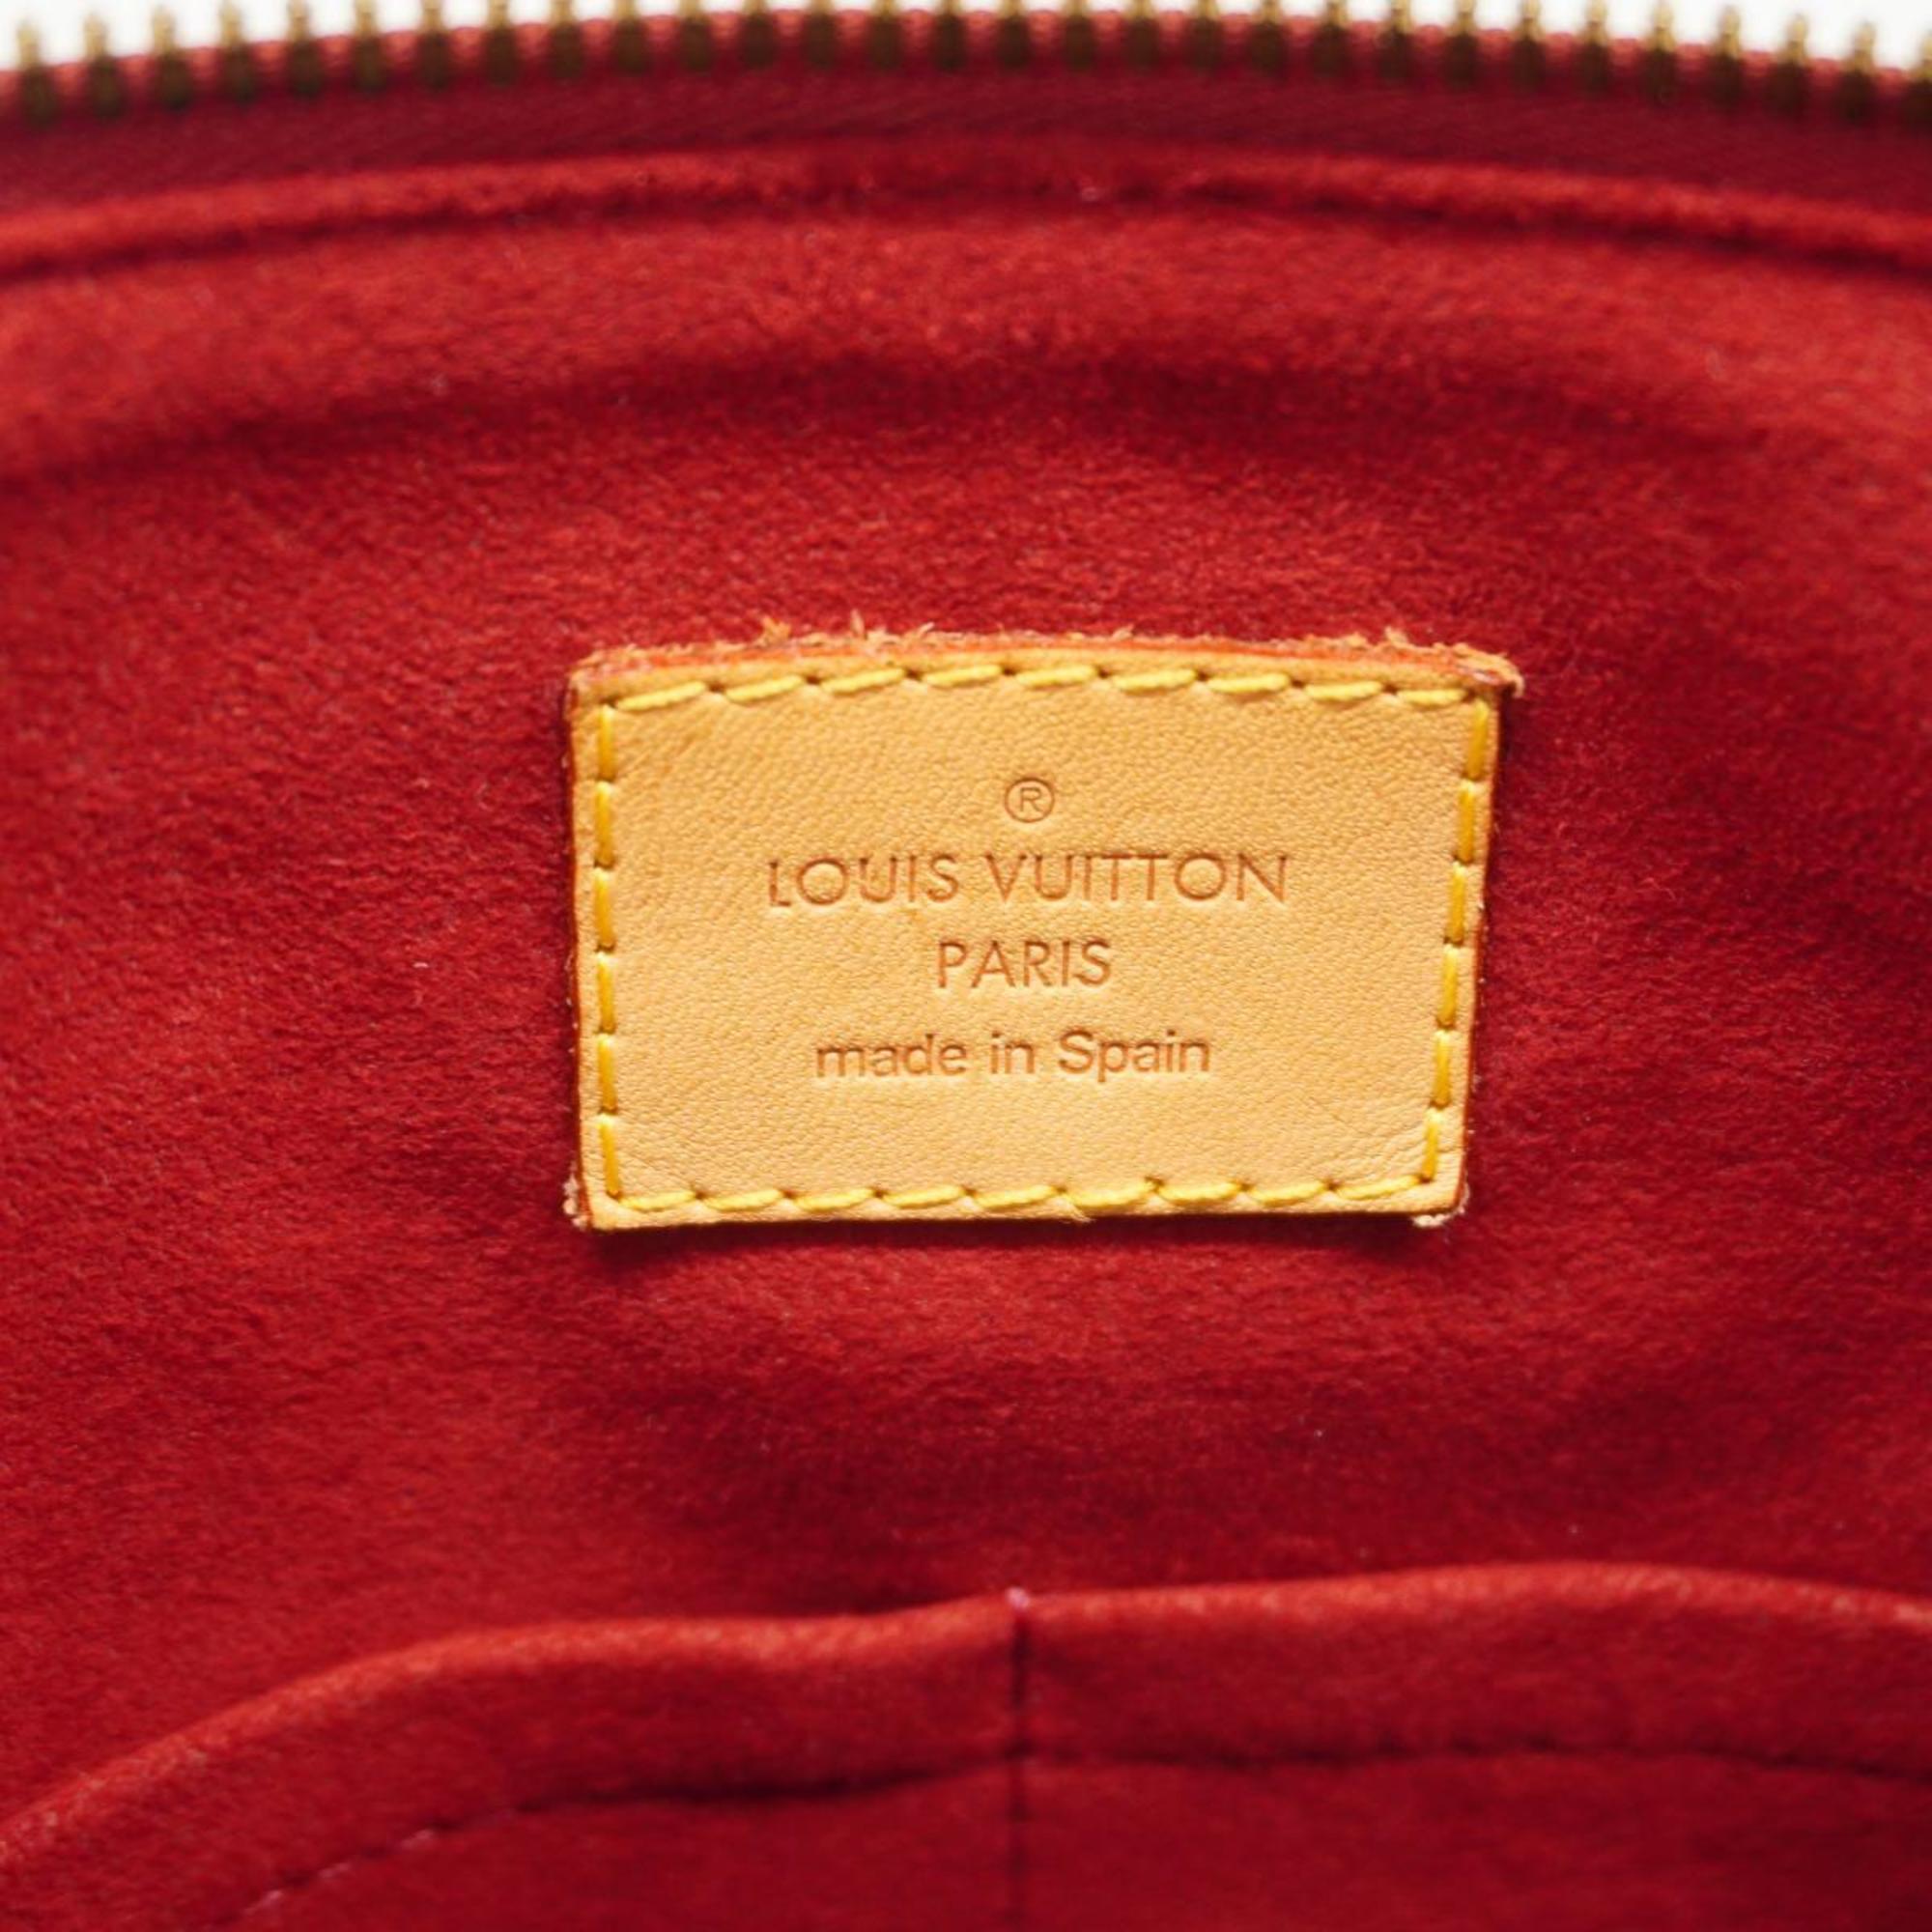 ルイ・ヴィトン(Louis Vuitton) ルイ・ヴィトン ハンドバッグ モノグラム パラス M43705 ローズブリュイエールレディース